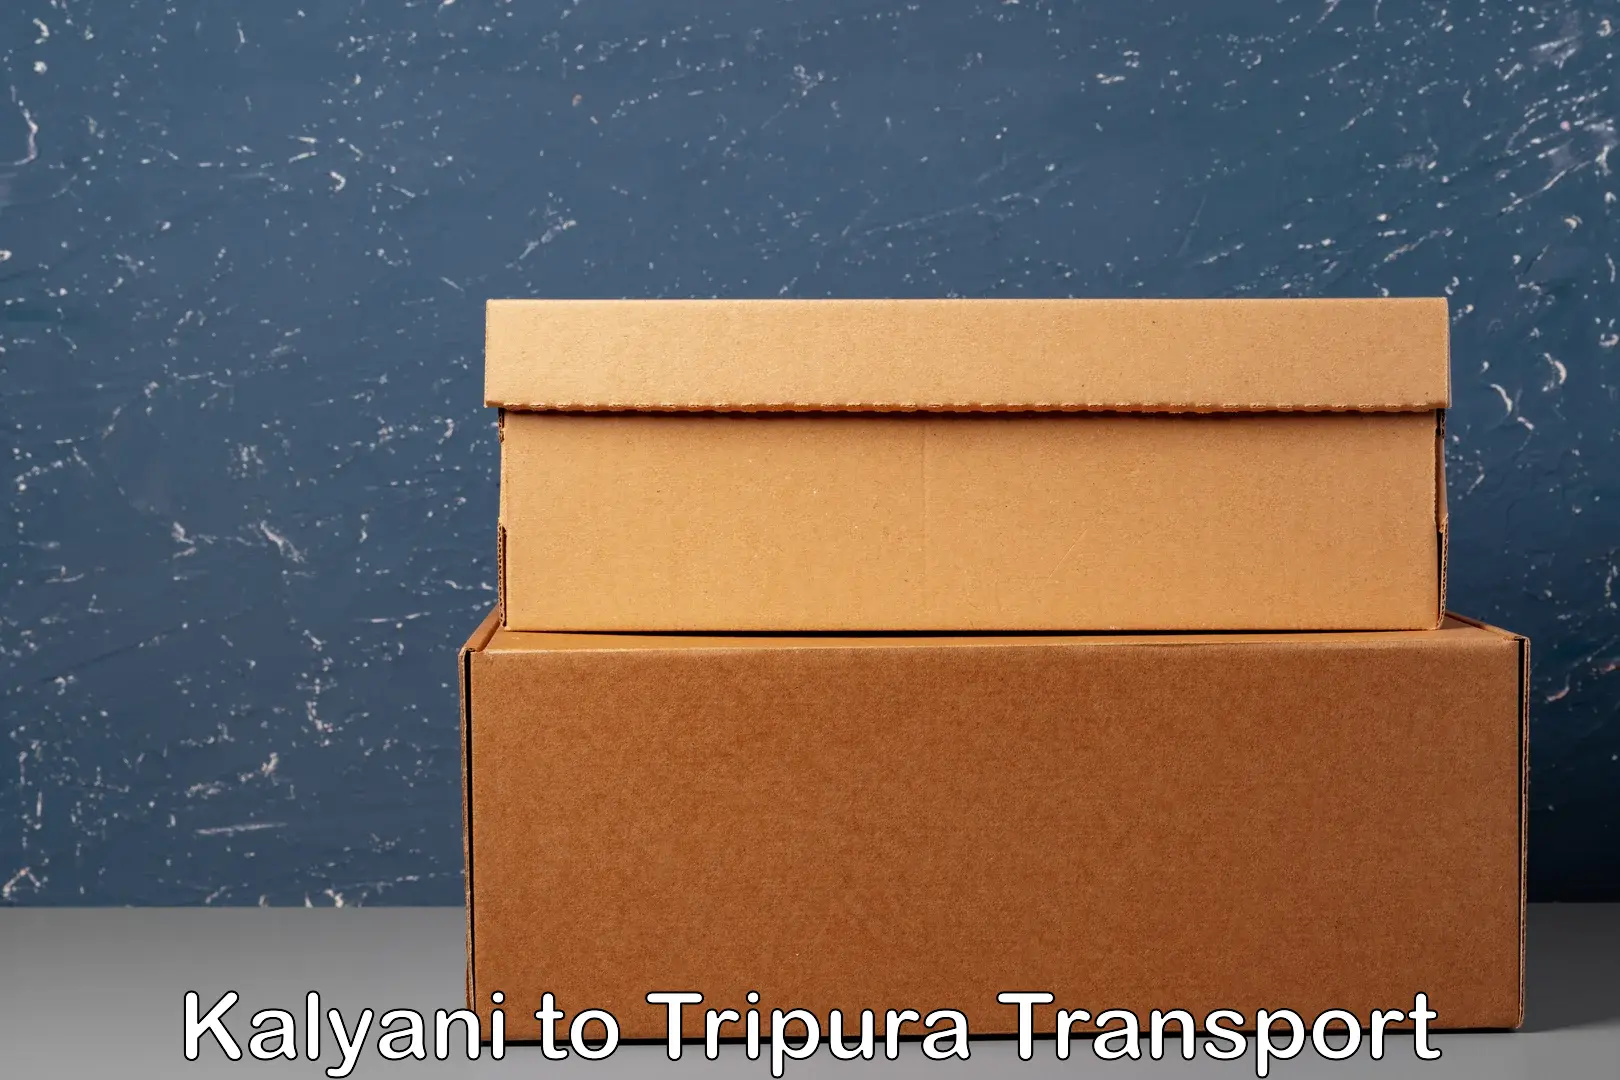 Transportation services in Kalyani to Tripura